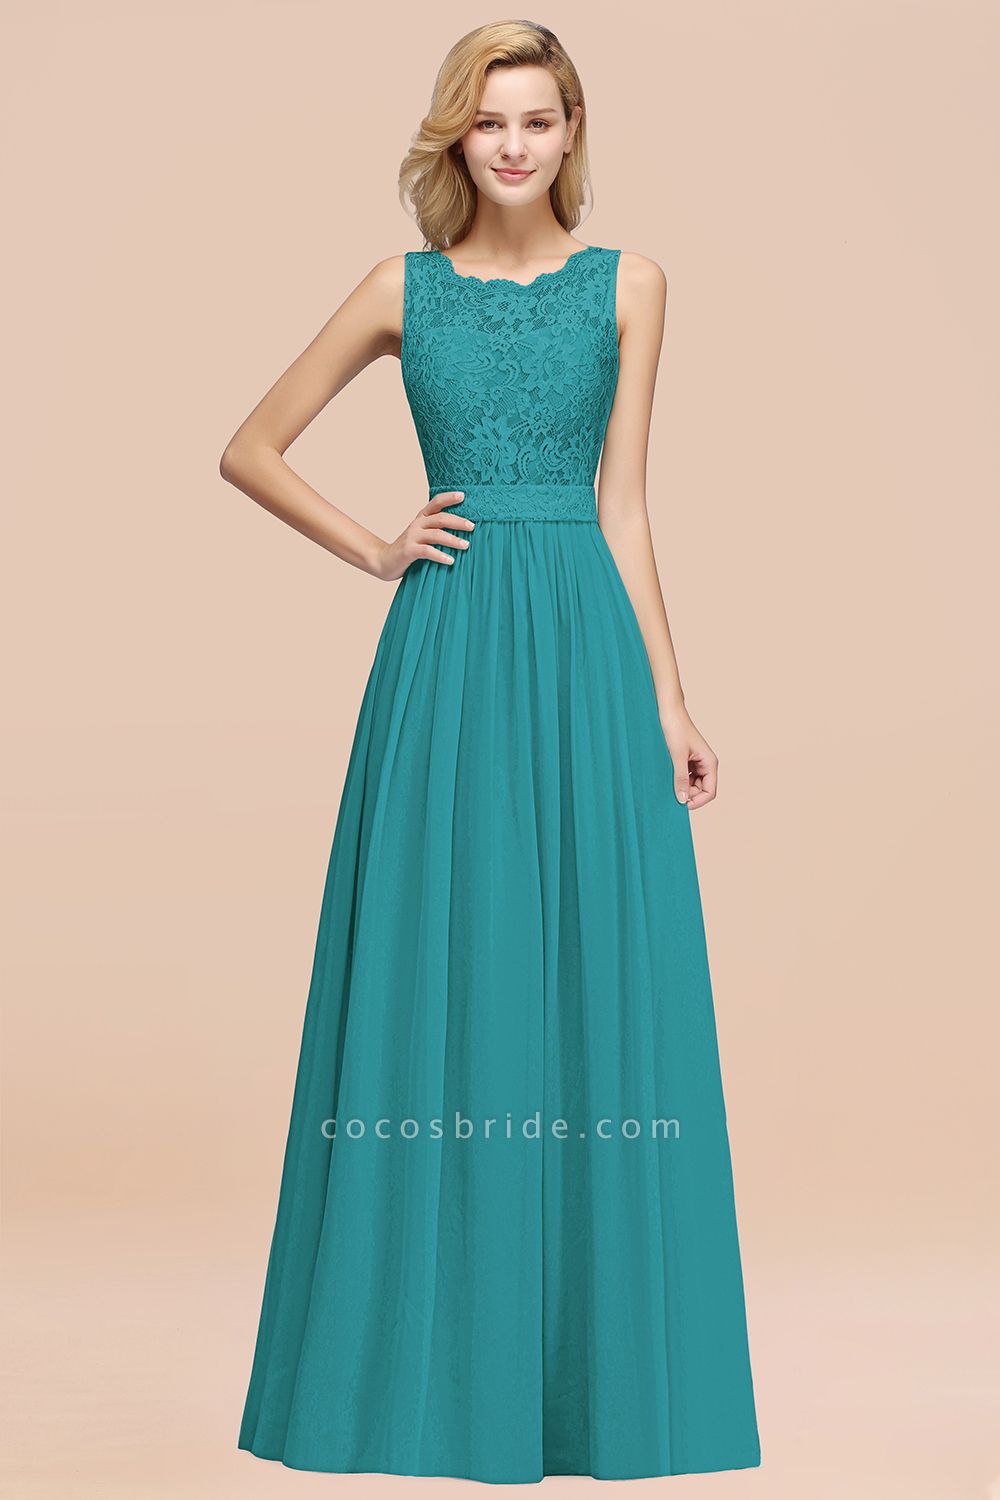 BM0834 Chiffon A-Line Lace Scalloped Sleeveless Long Ruffles Bridesmaid Dress